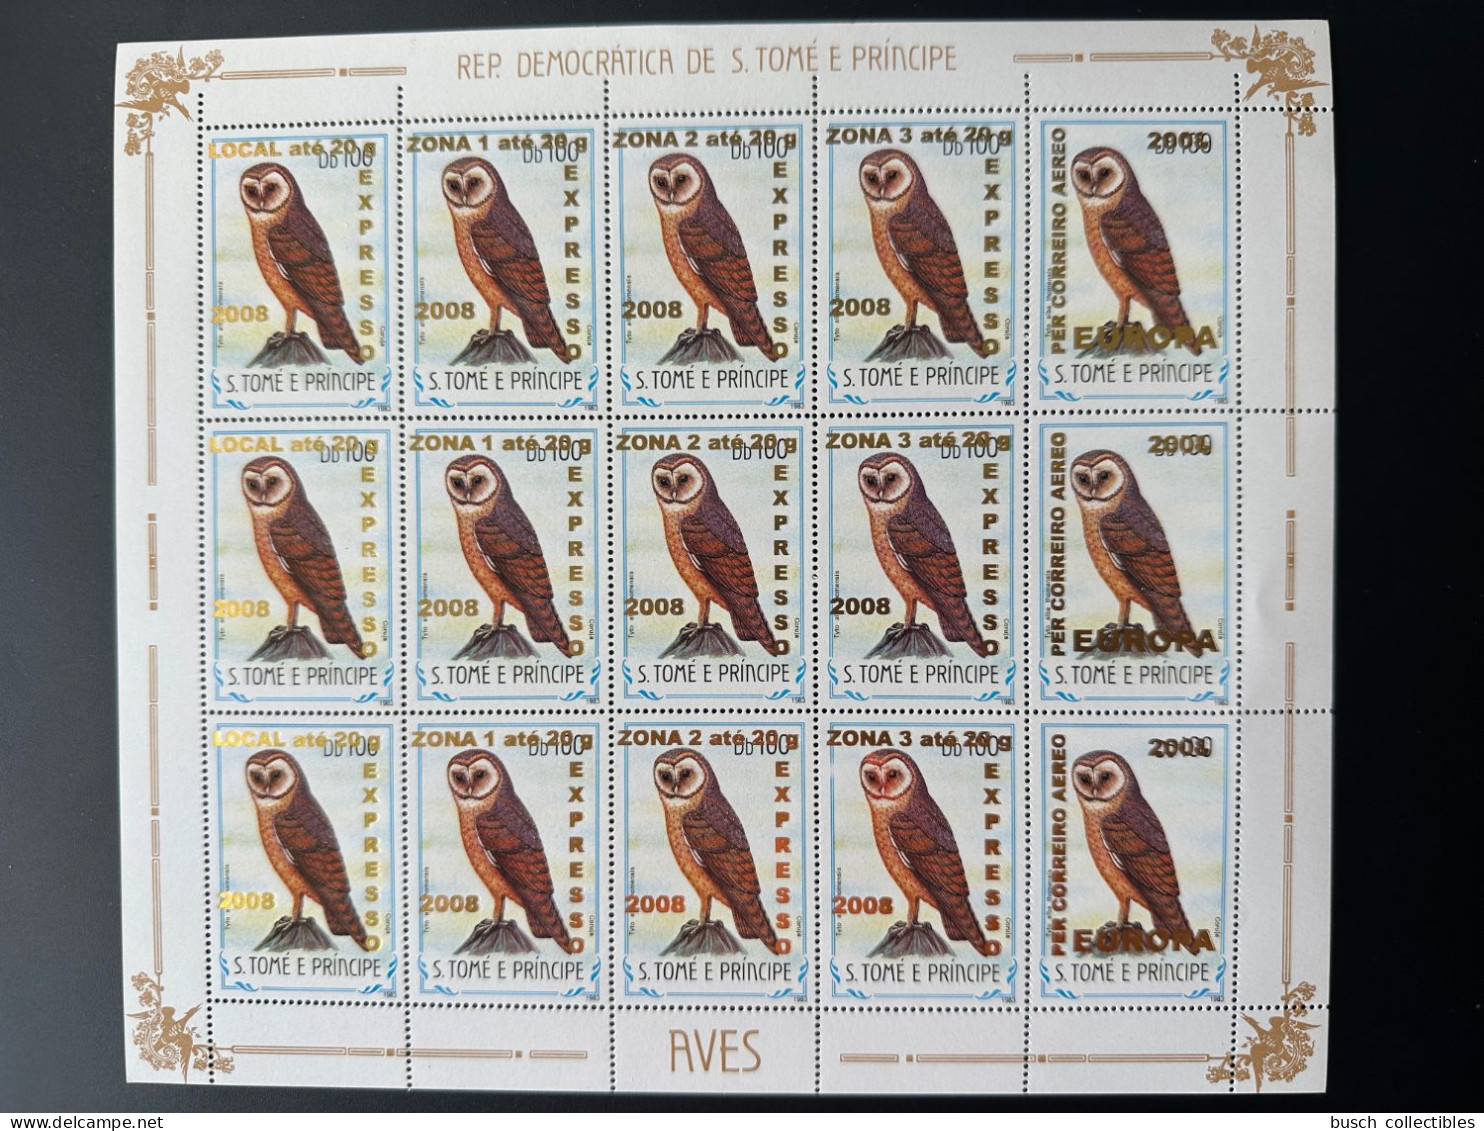 S. Tomé & Principe 2009 Mi. 3963 - 3966 + 3968 Sheet Oiseaux Birds Vögel Chouette Eule Owl Fauna Overprint Surcharge - Sao Tome And Principe